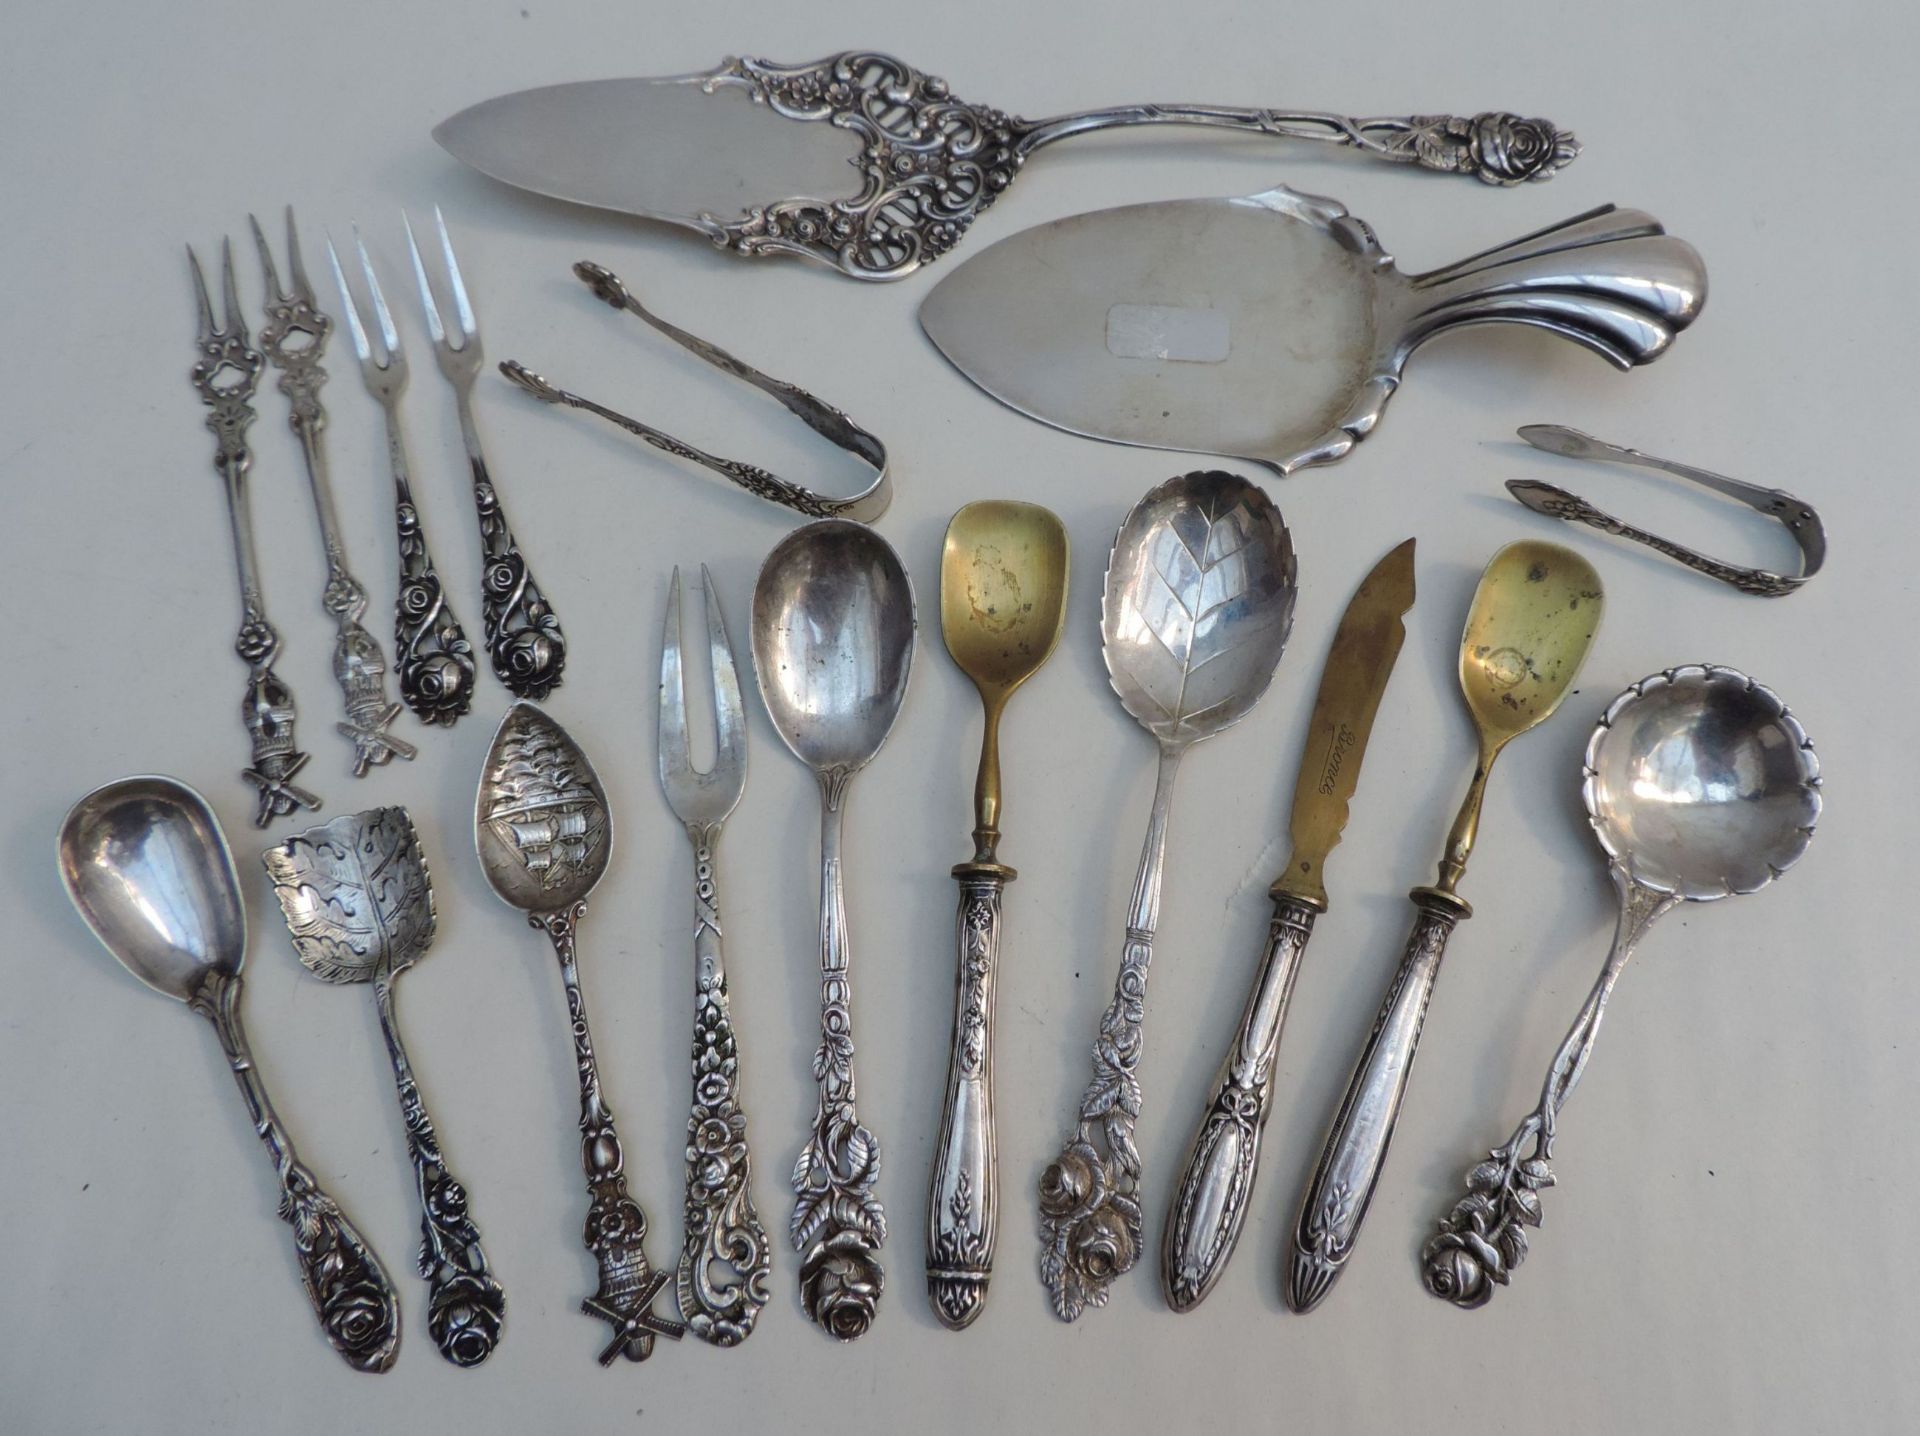 BESTECKTEILE, Konv von 18, 800-Silber, dabei Tortenschaufel, 2 Teeschäufelchen und 2 -löffel, 4